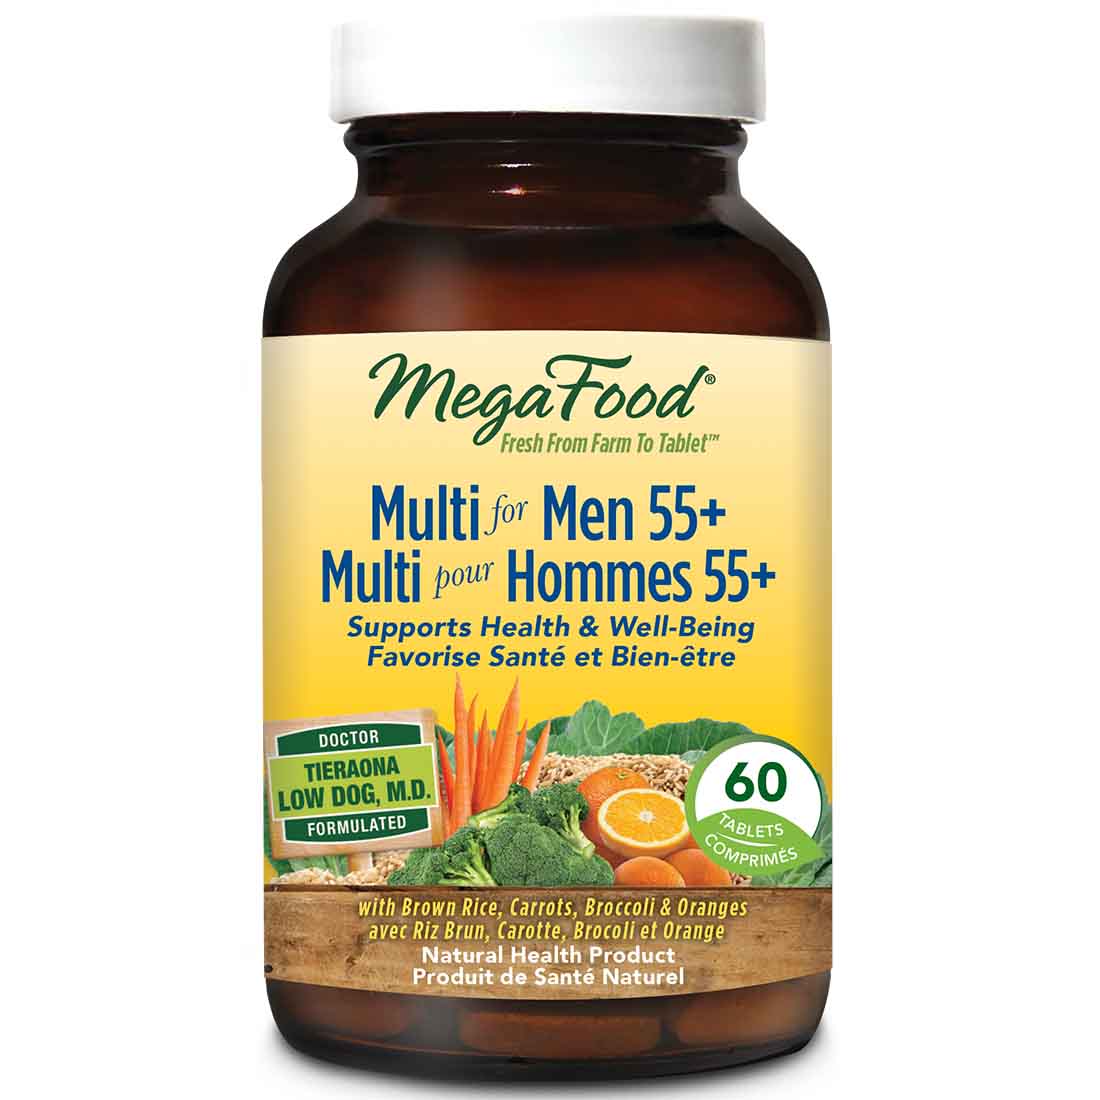 MegaFood Multivitamin for Men 55+, 60 Tablets